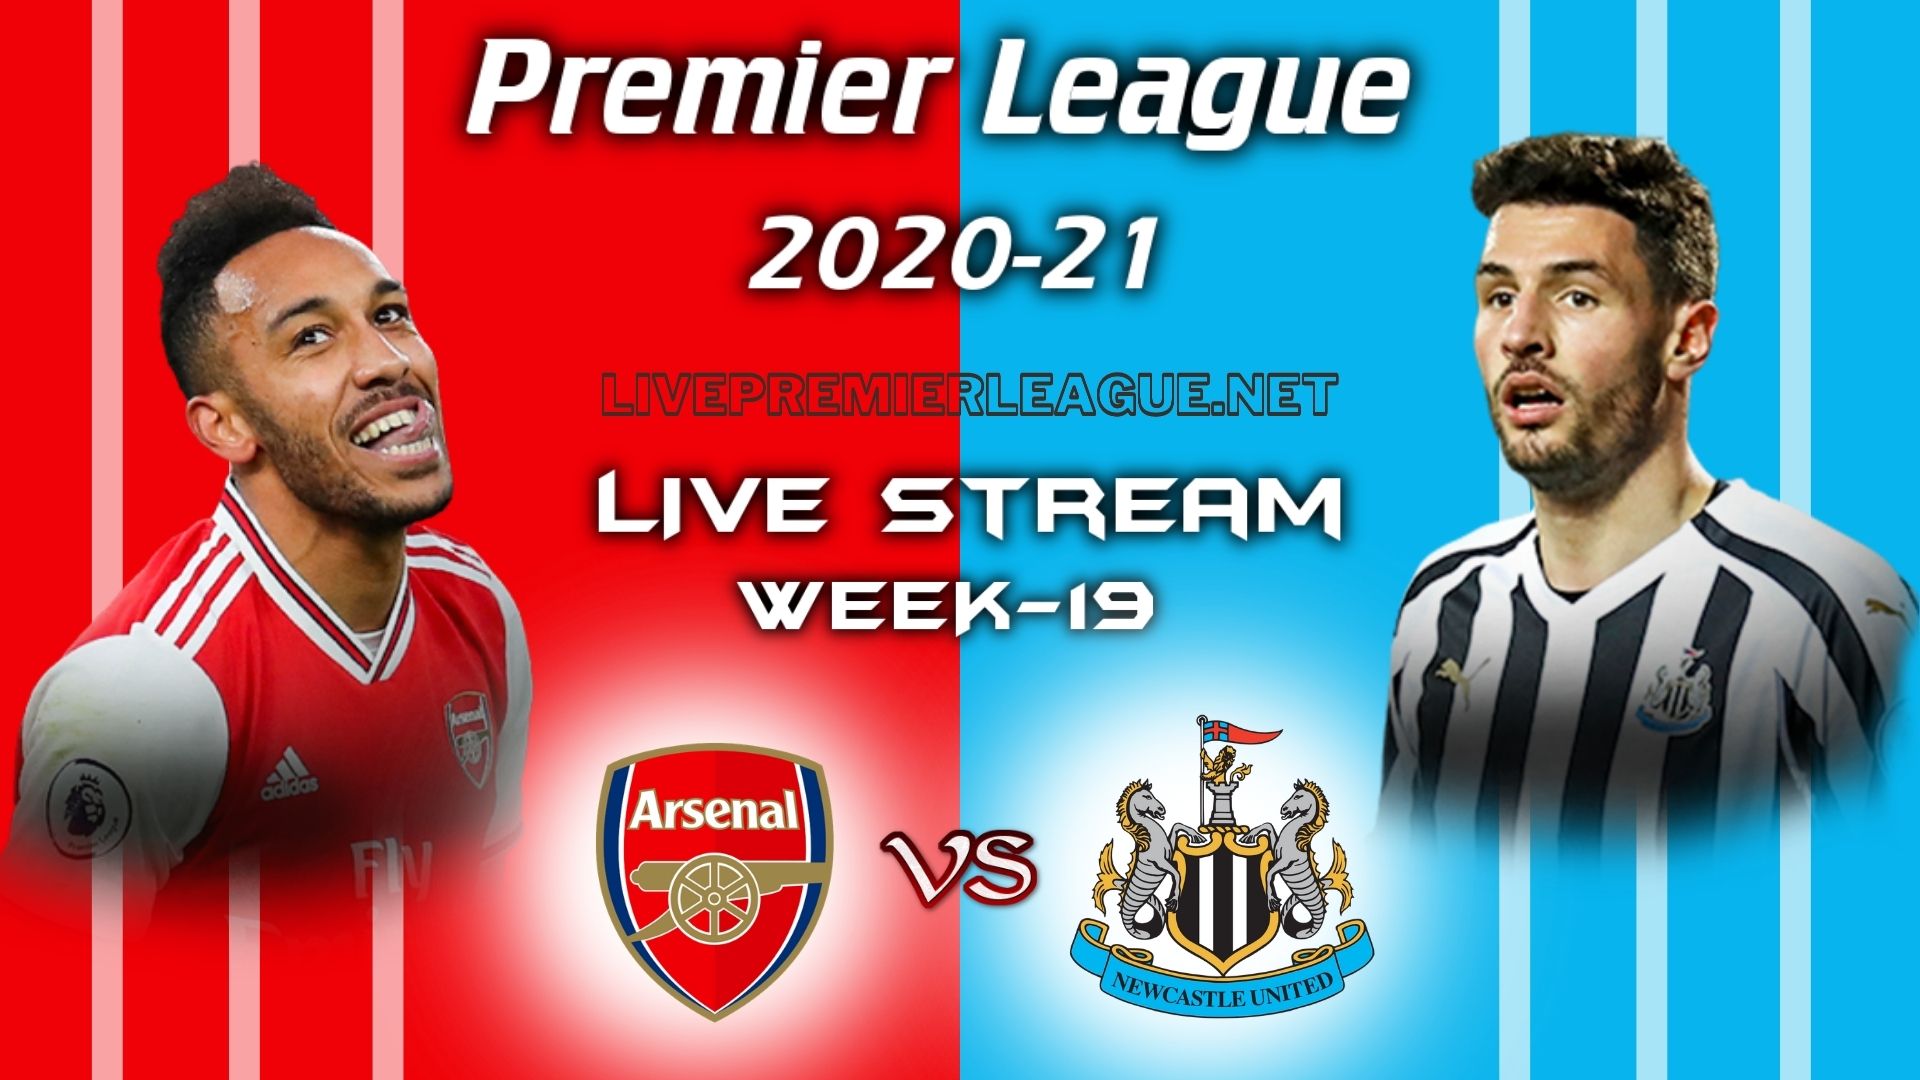 Arsenal Vs Newcastle United Live Stream 2021 Week 19